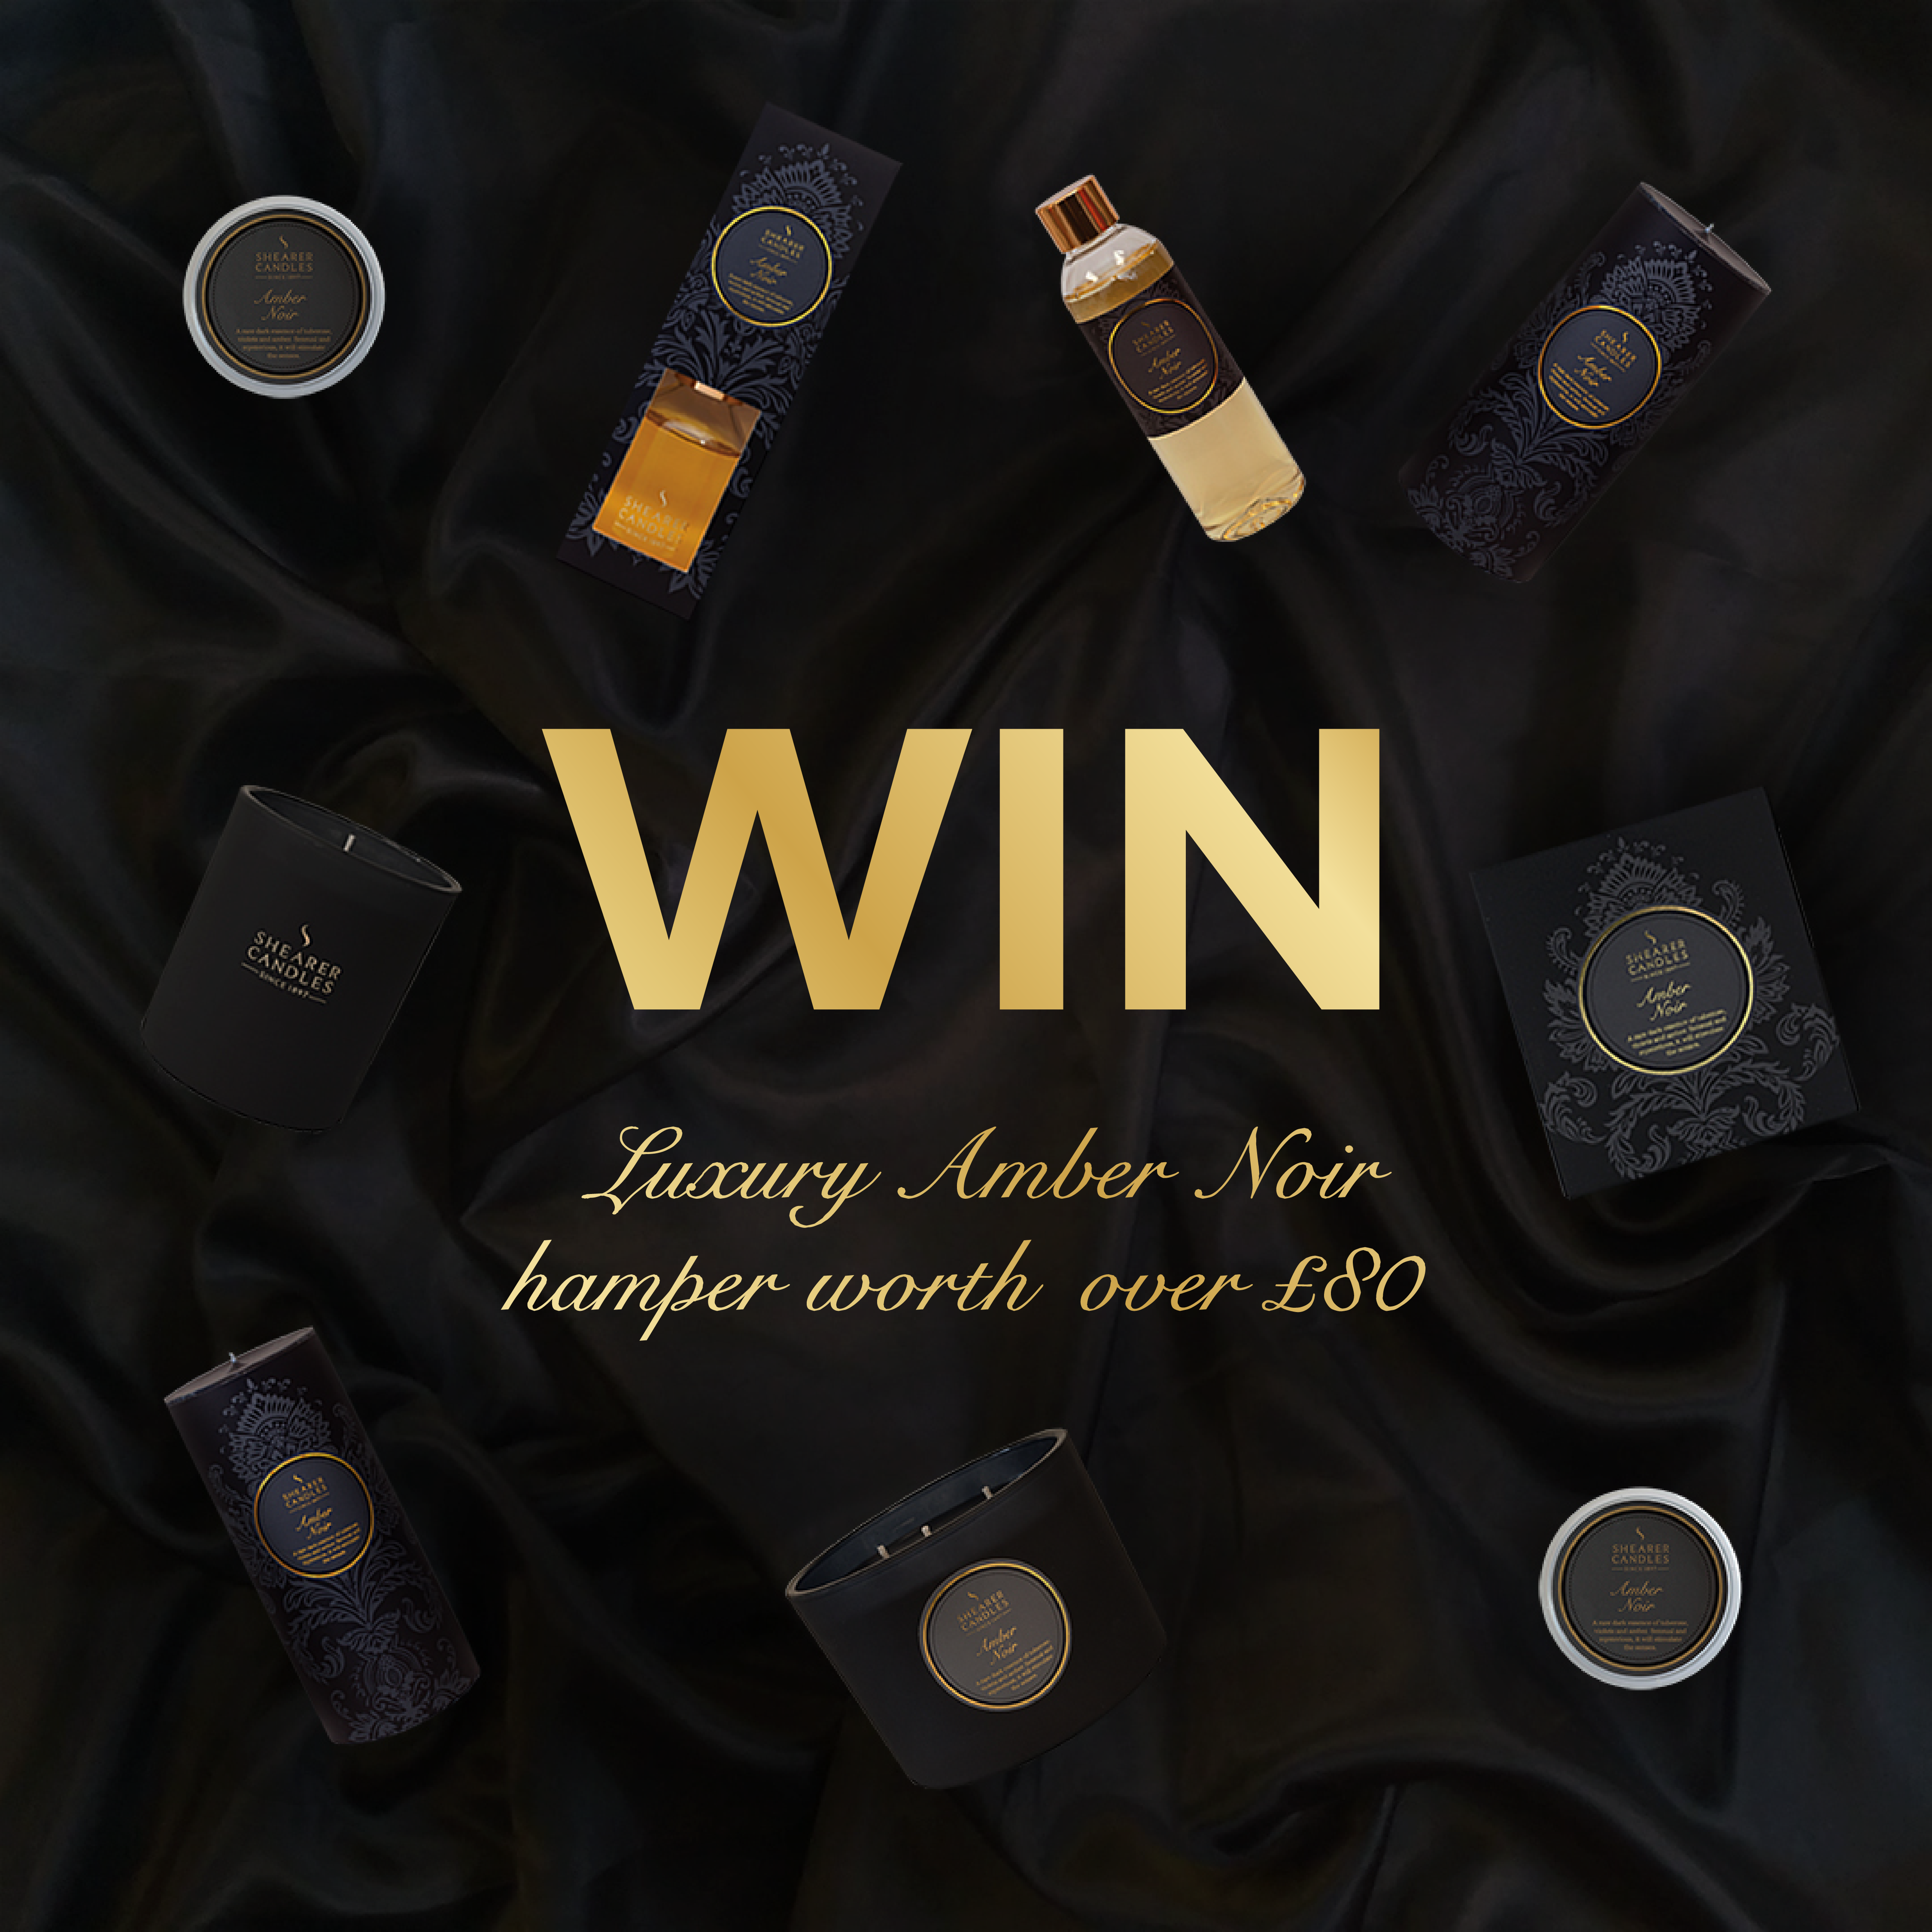 Win a luxury Amber Noir hamper